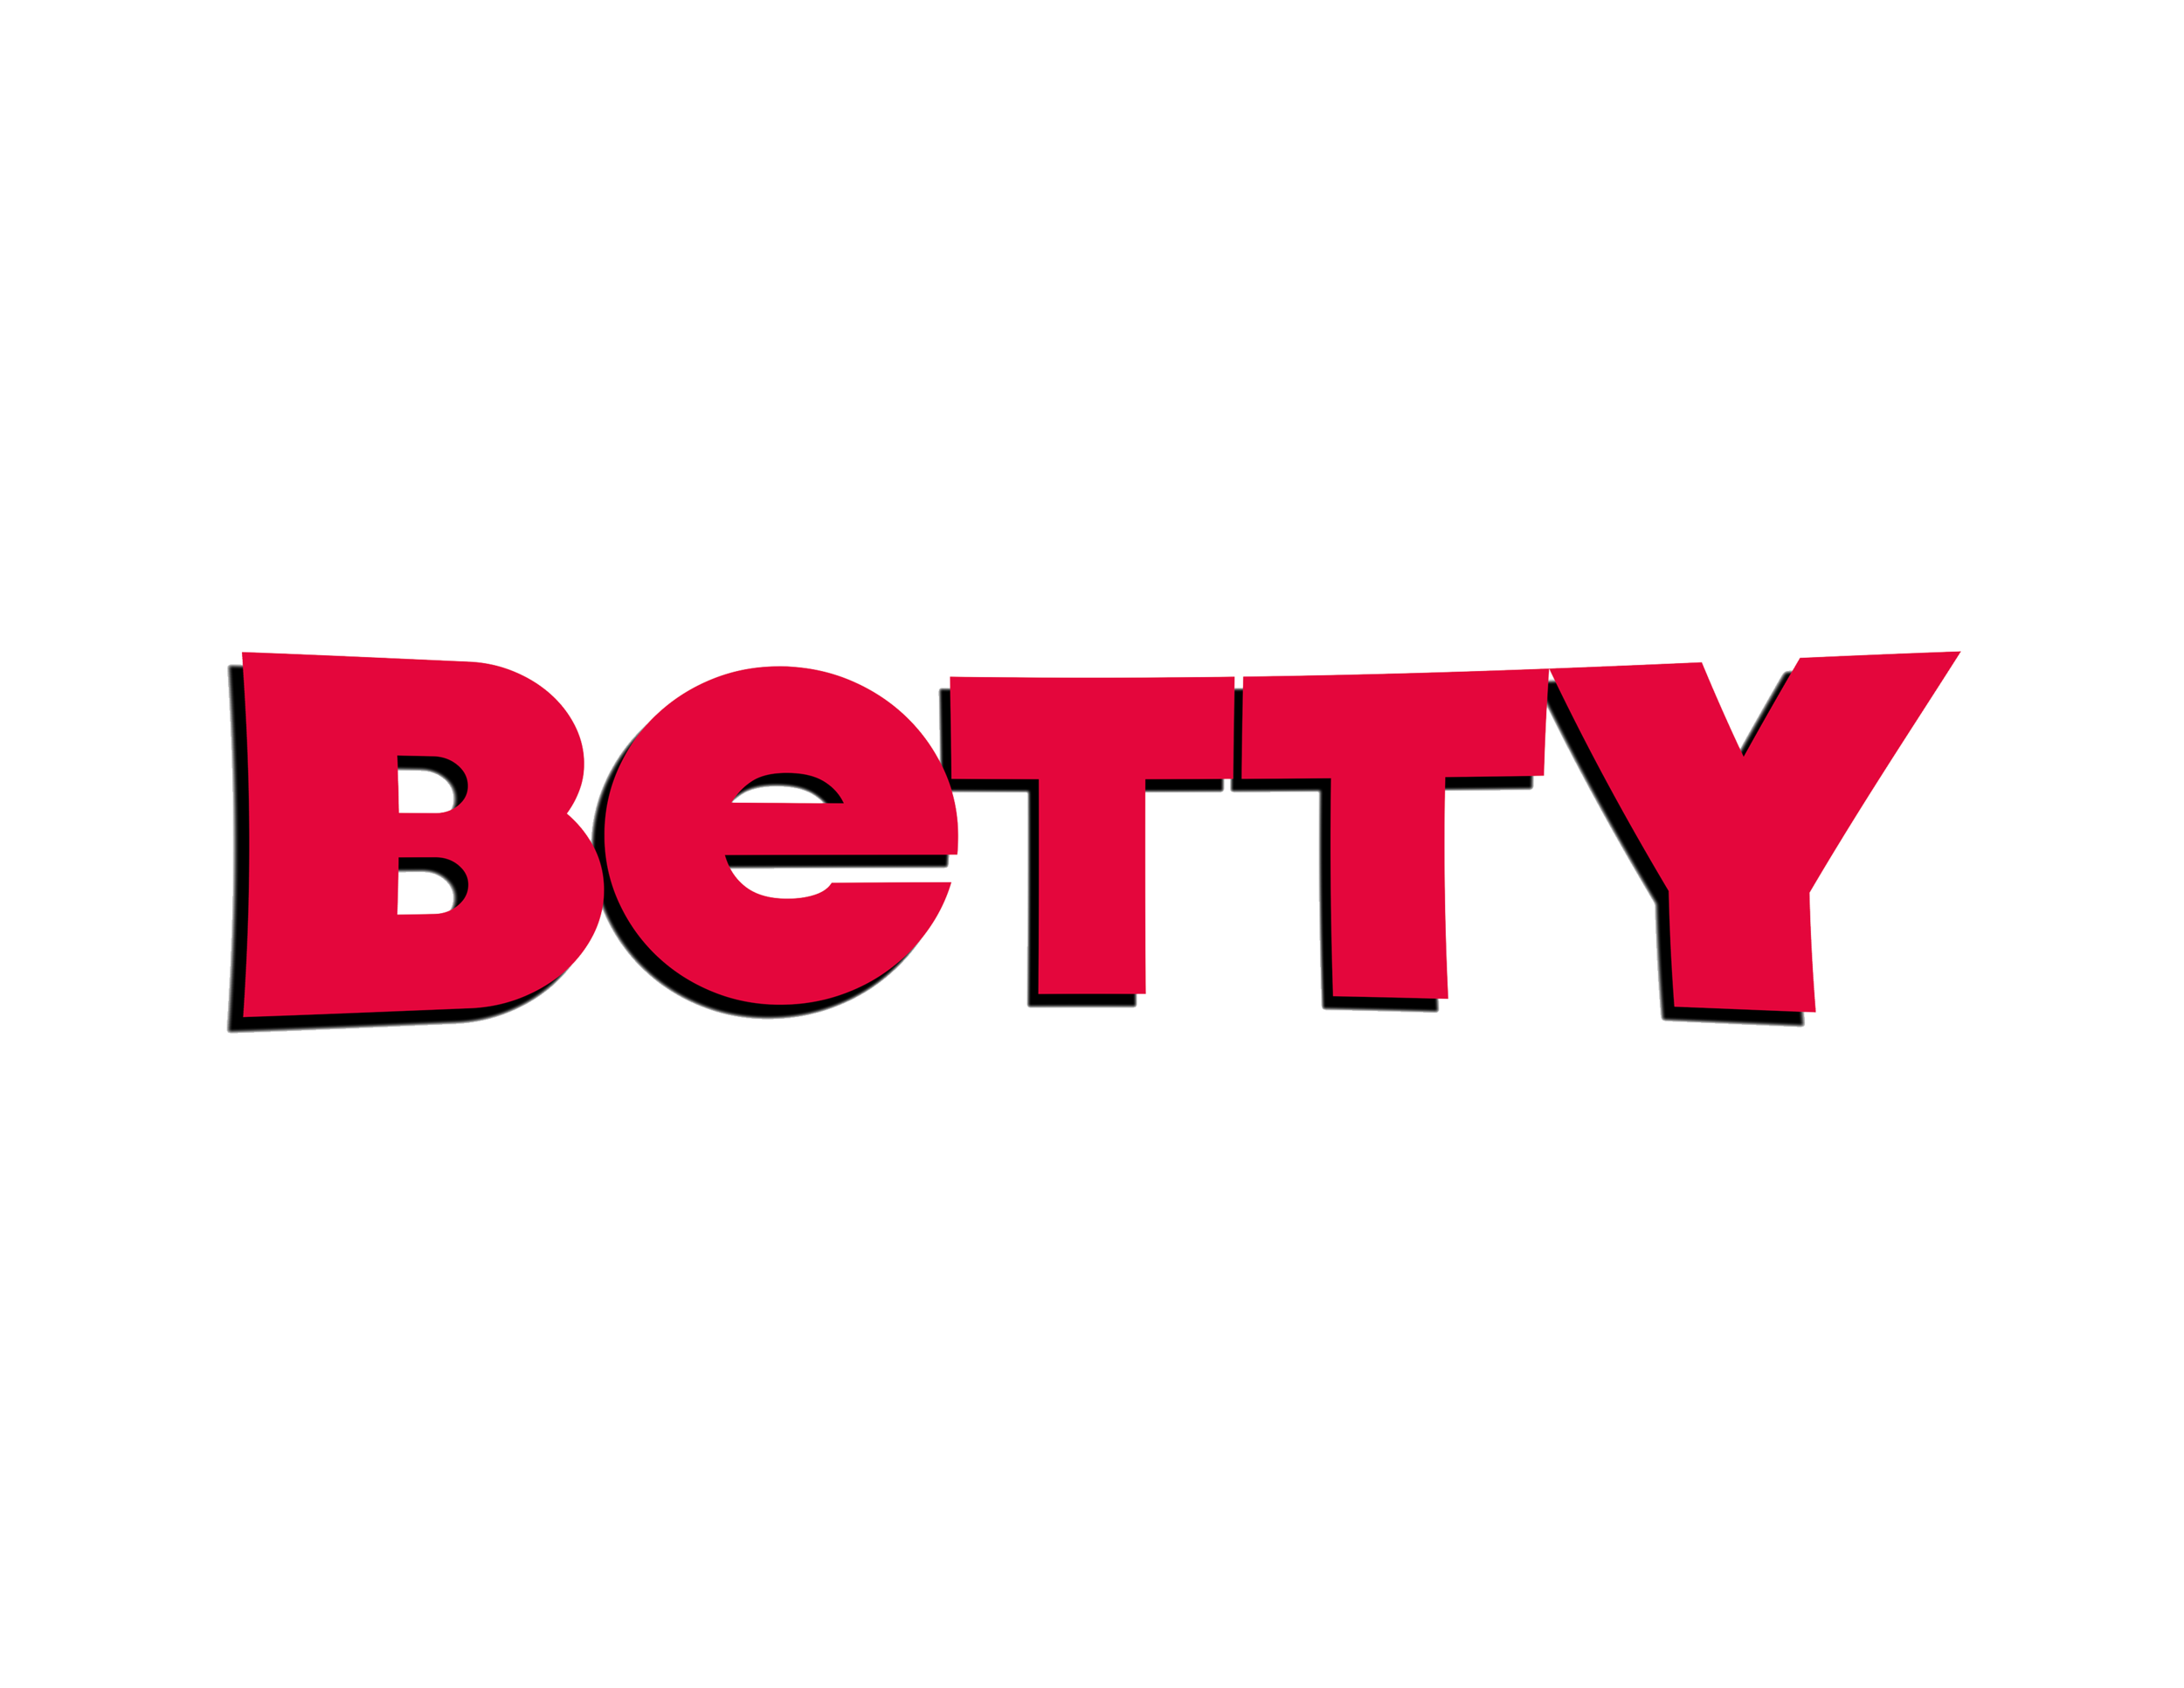 Bettt